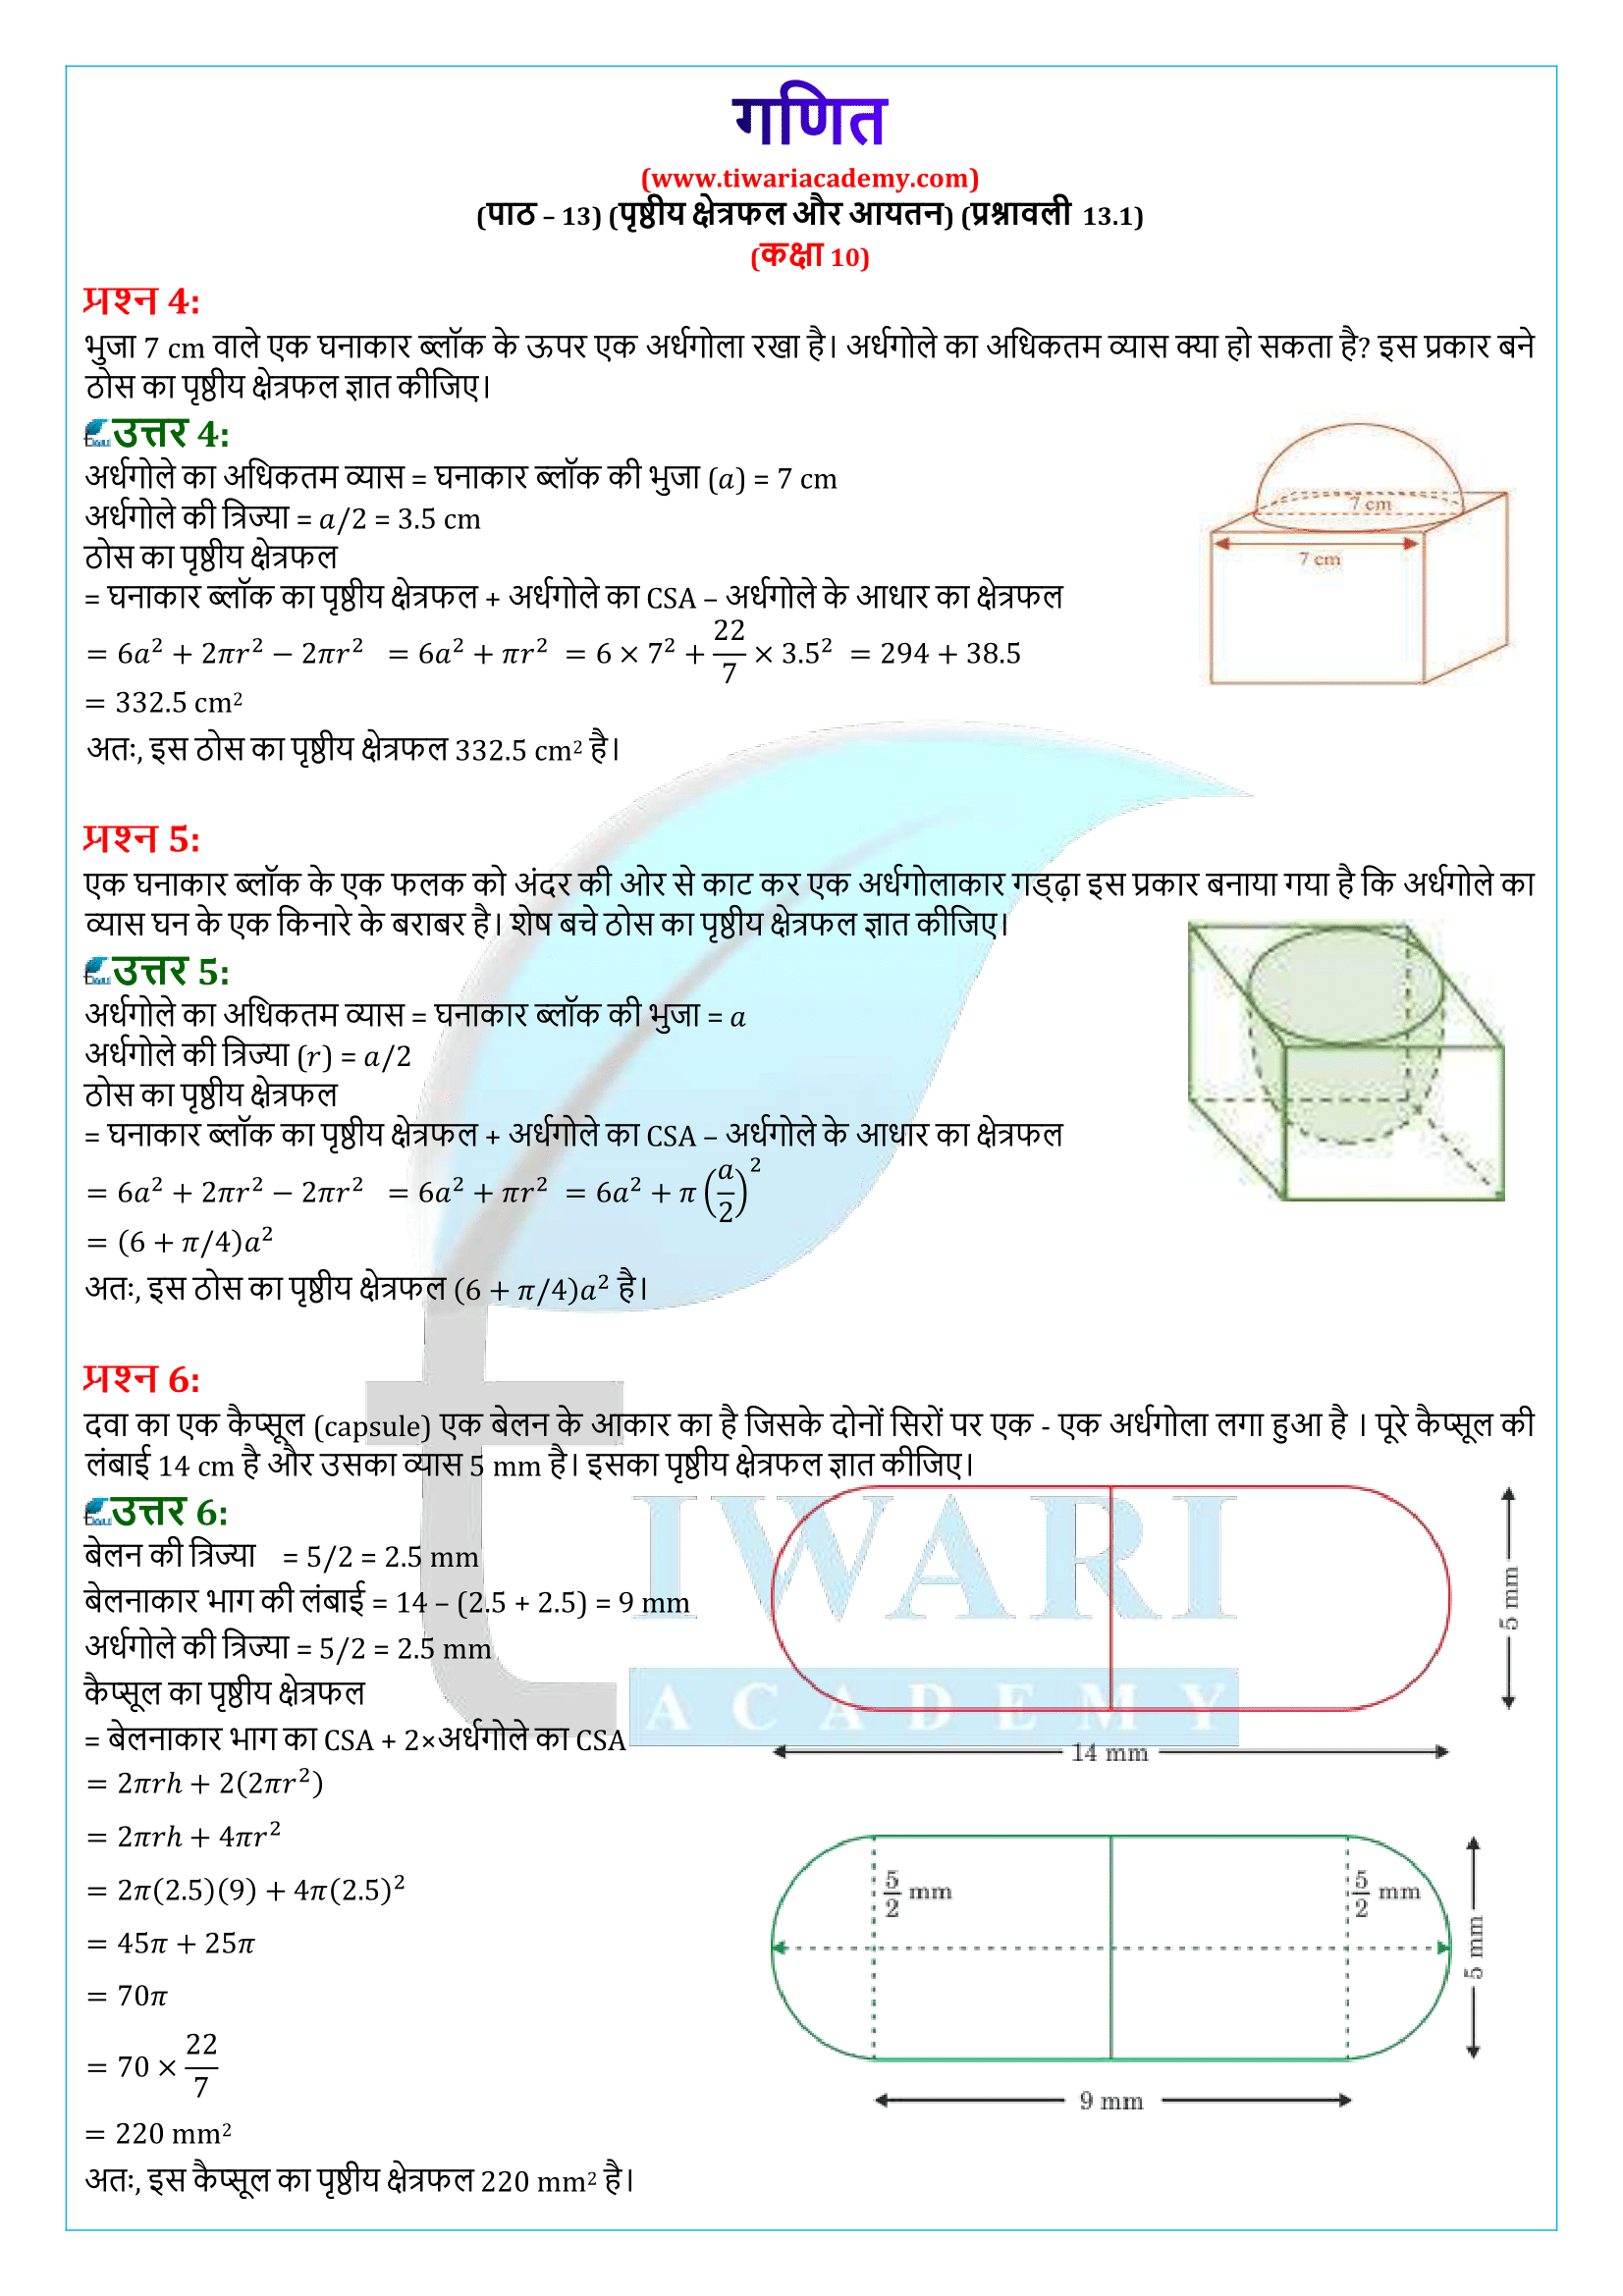 कक्षा 10 गणित प्रश्नावली 13.1 के हल